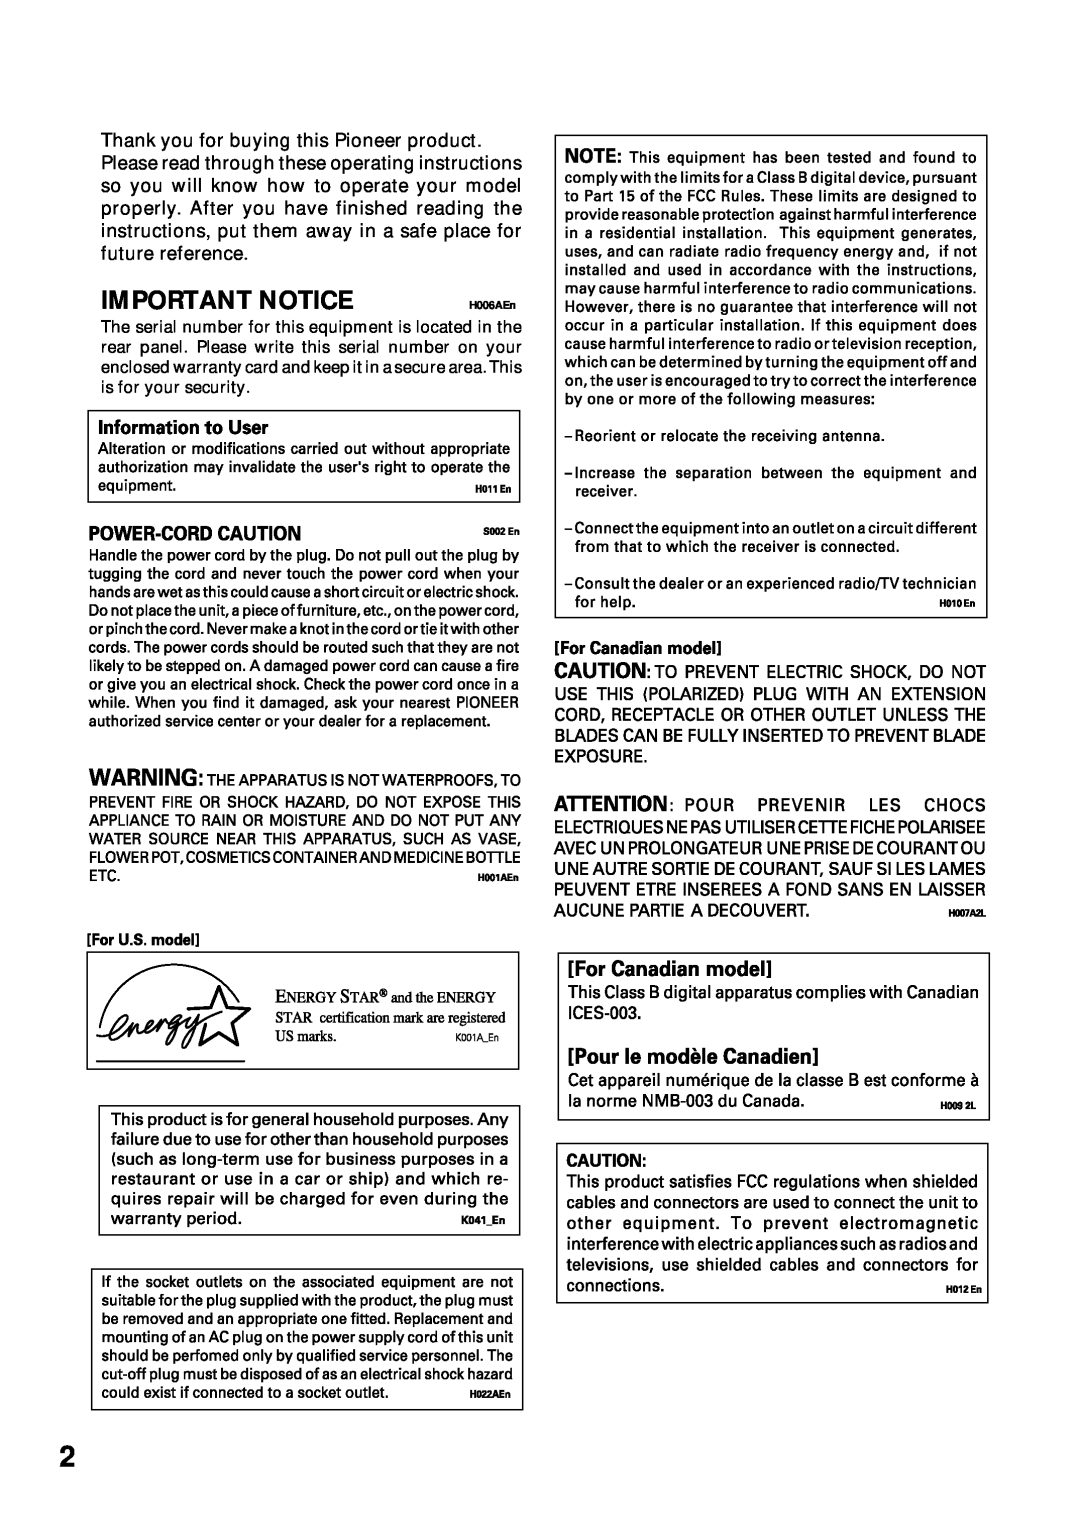 Pioneer VSX-45TX manual Important Notice, H006AEn 